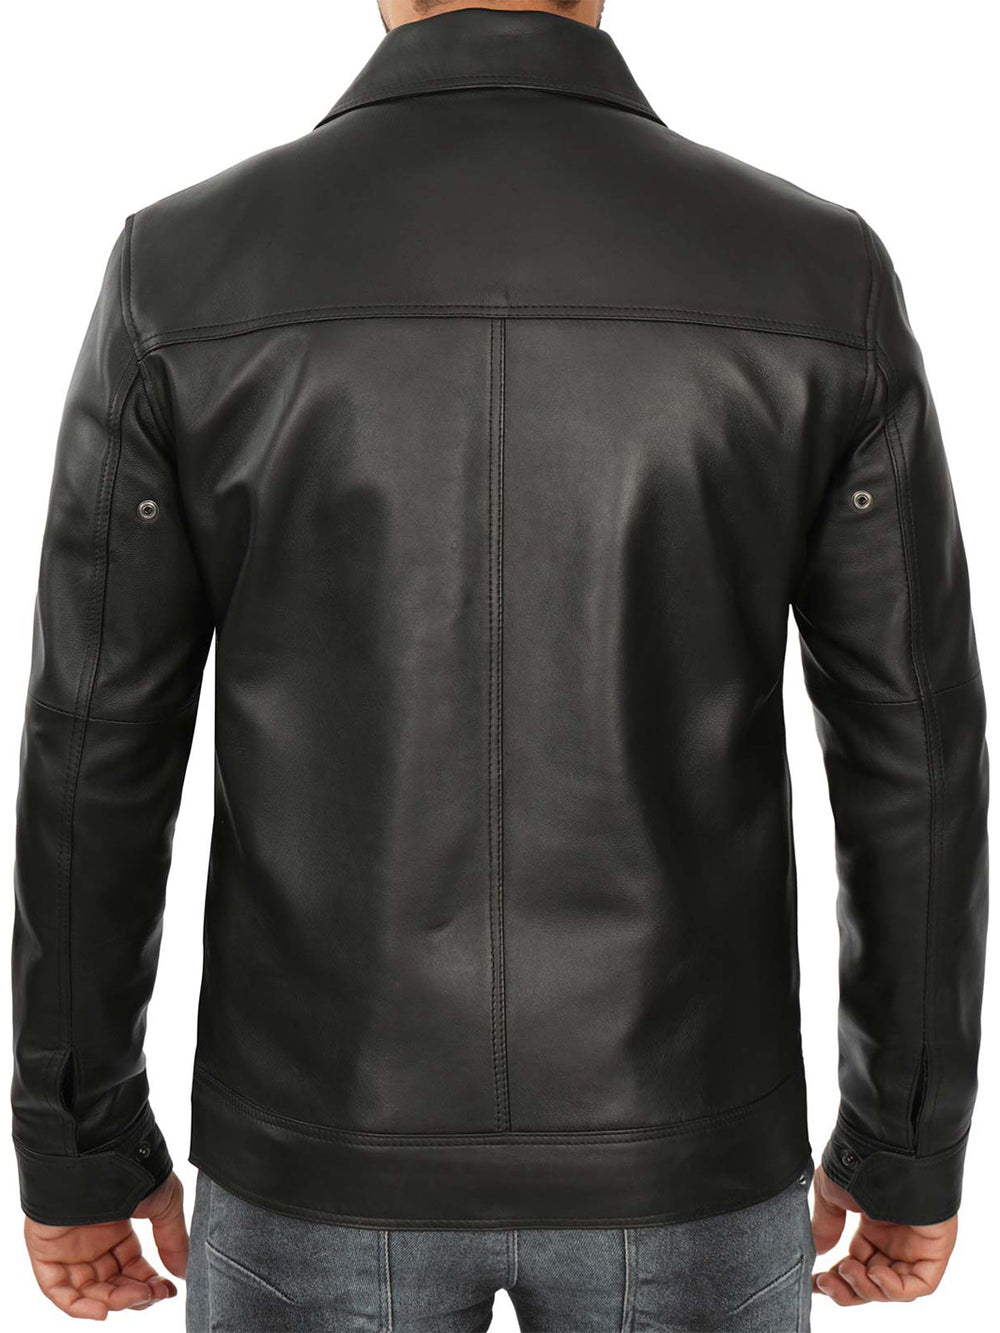 Mens Black biker leather jacket